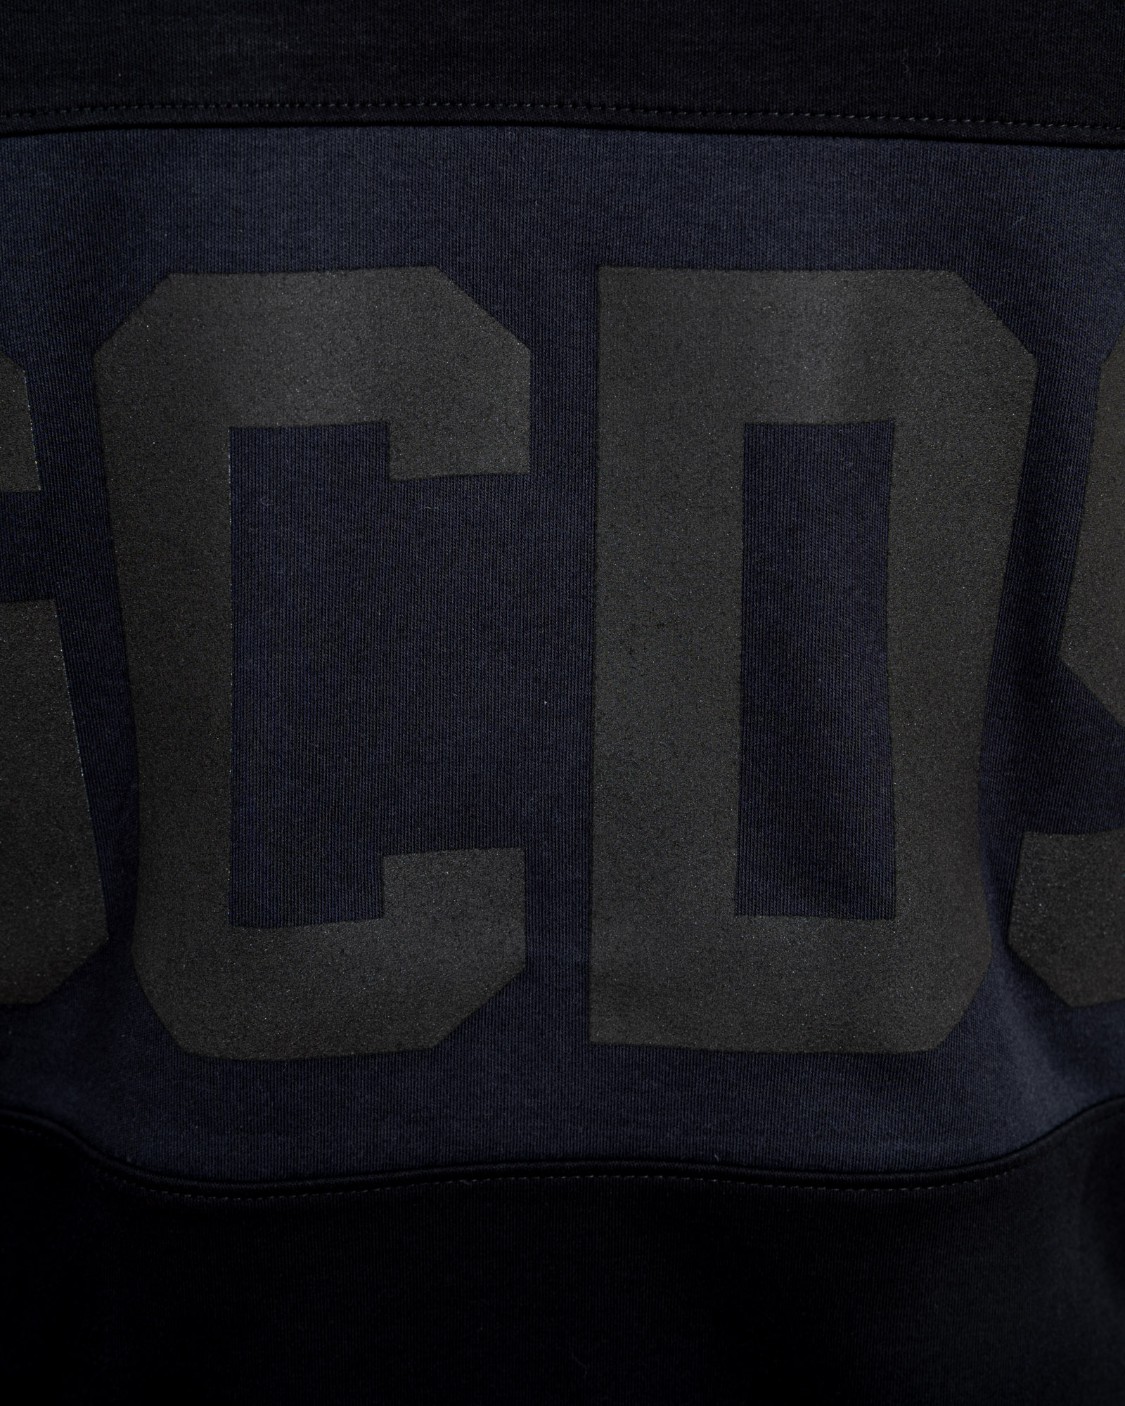 shop GCDS Saldi T-shirt: GCDS t-shirt nera con maxi logo, all around, tono su tono.
Maniche corte.
Scollo rotondo.
Vestibilità regolare.
Composizione: 100% cotone.
Made in Italia.. CC94M021501-02 number 6590082